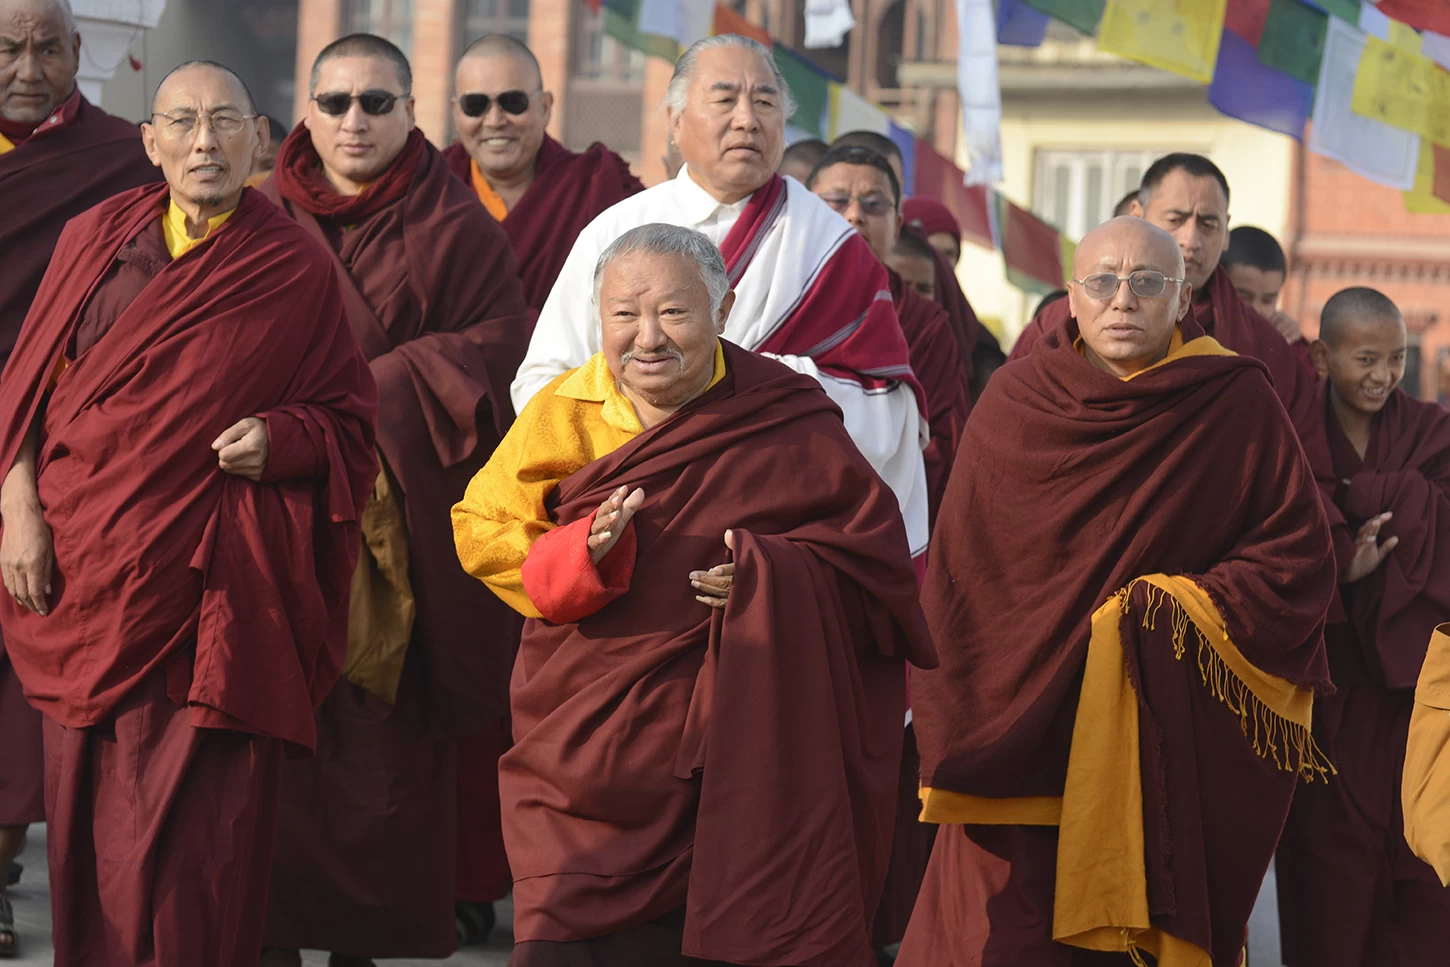  Buddhist Mater at Boudha Stupa - Nepal Buddhist Circuit Tour 